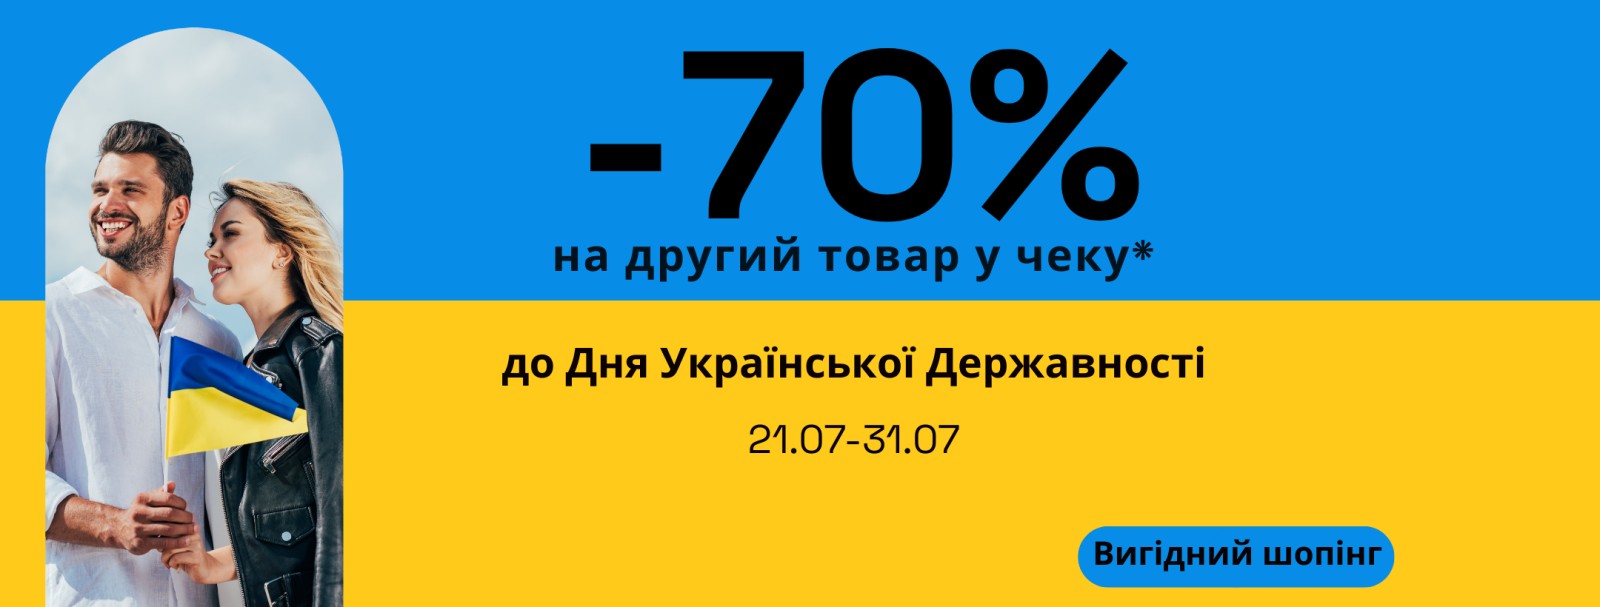 До Дня Української Державності // -70% на другий товар у чеку*